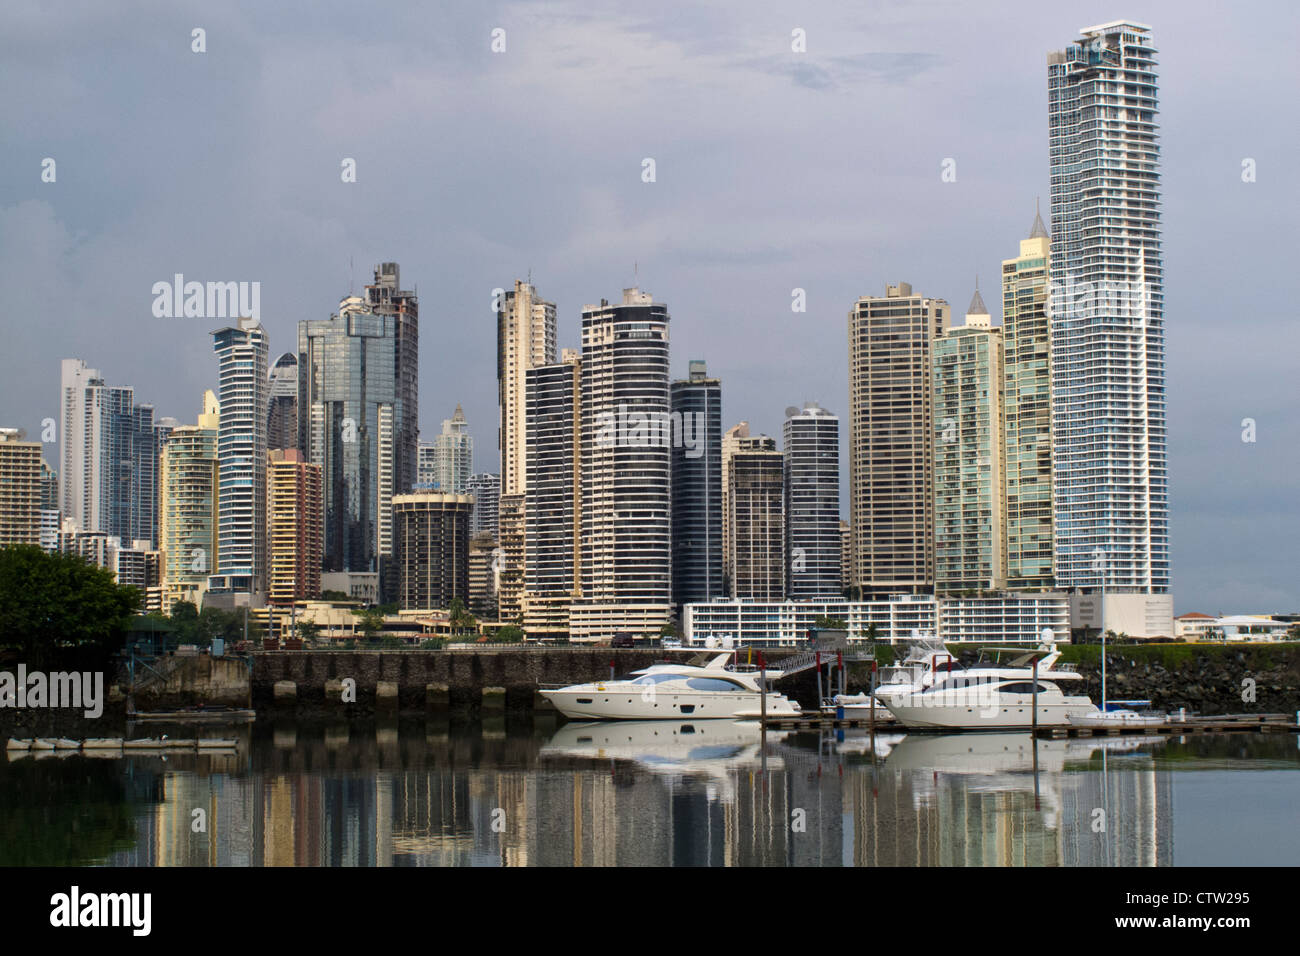 Gesamtansicht der Wolkenkratzer / Skyline mit Bucht / Wasser-Ansicht und Boote, Panama City, Panama Stockfoto